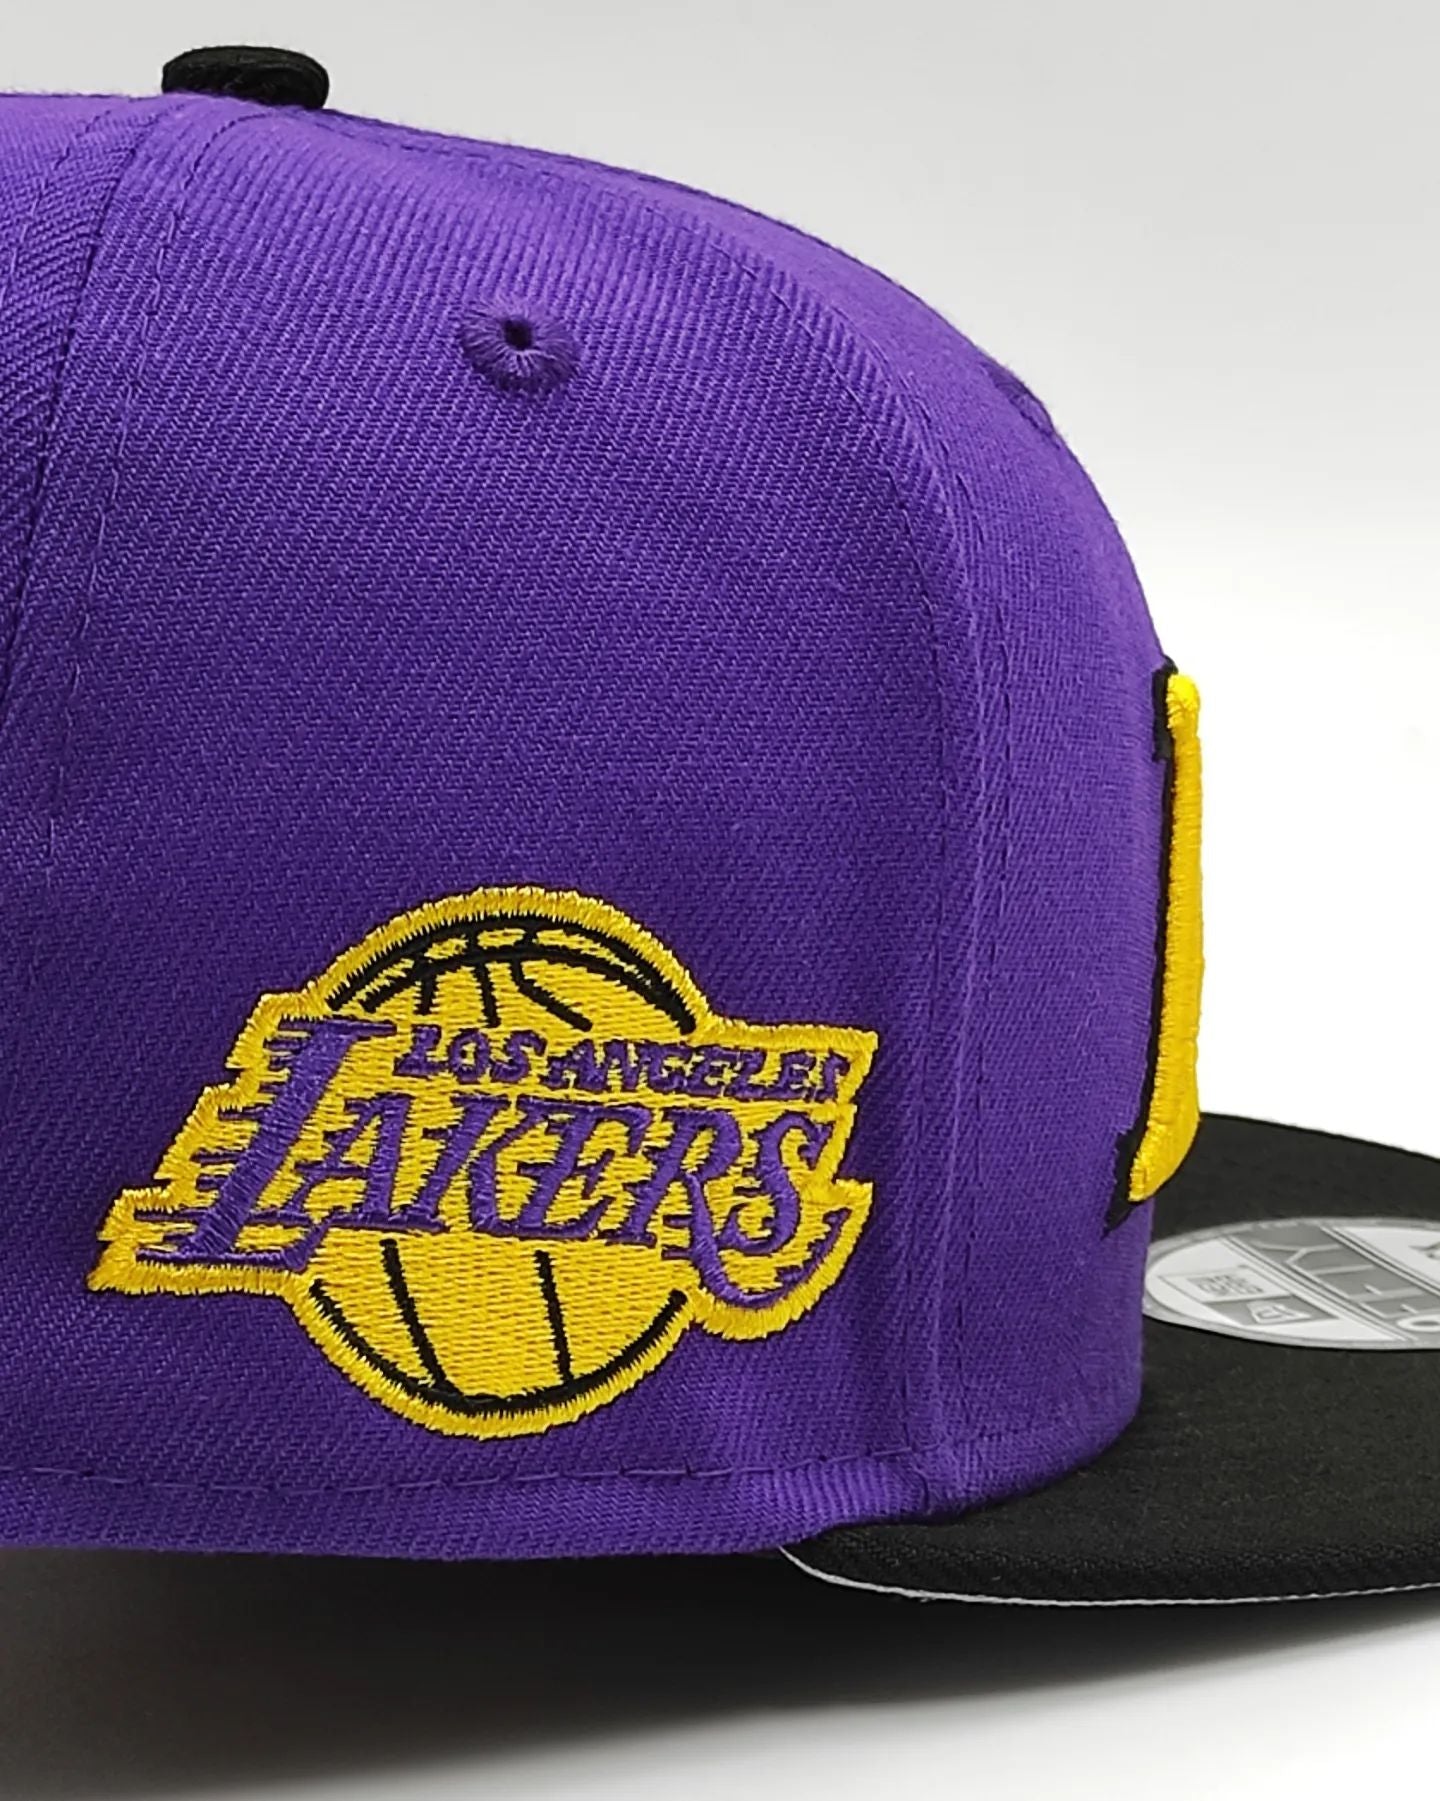 New Era Los Ángeles Lakers 9Fifty snapback colección jersey